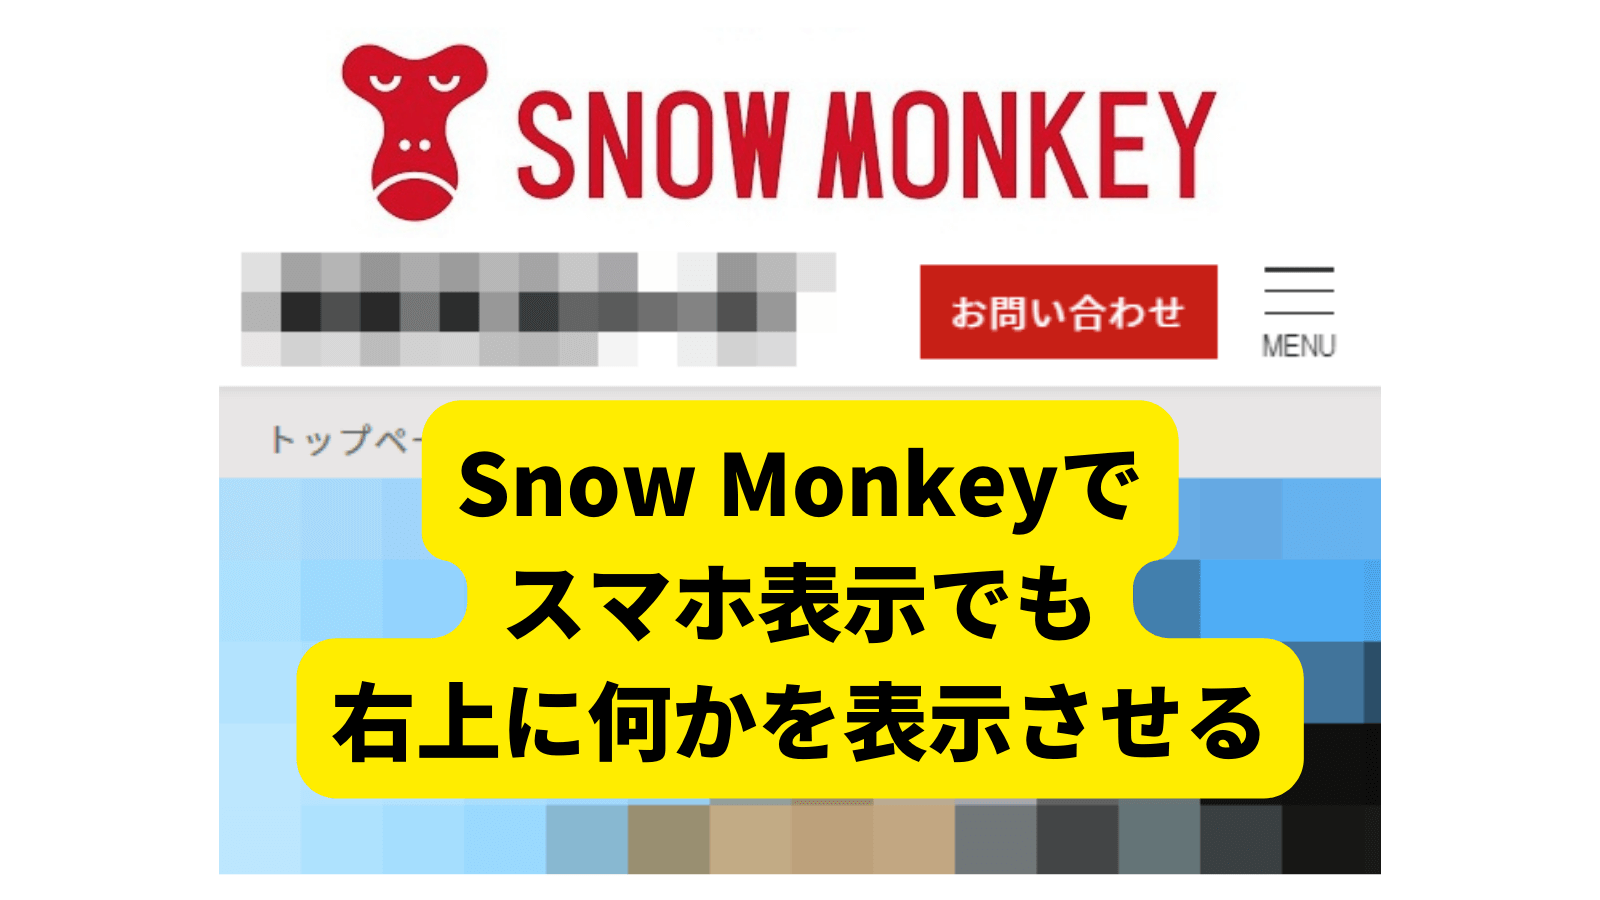 Snow Monkeyでスマホ表示でも右上に何かを表示させる